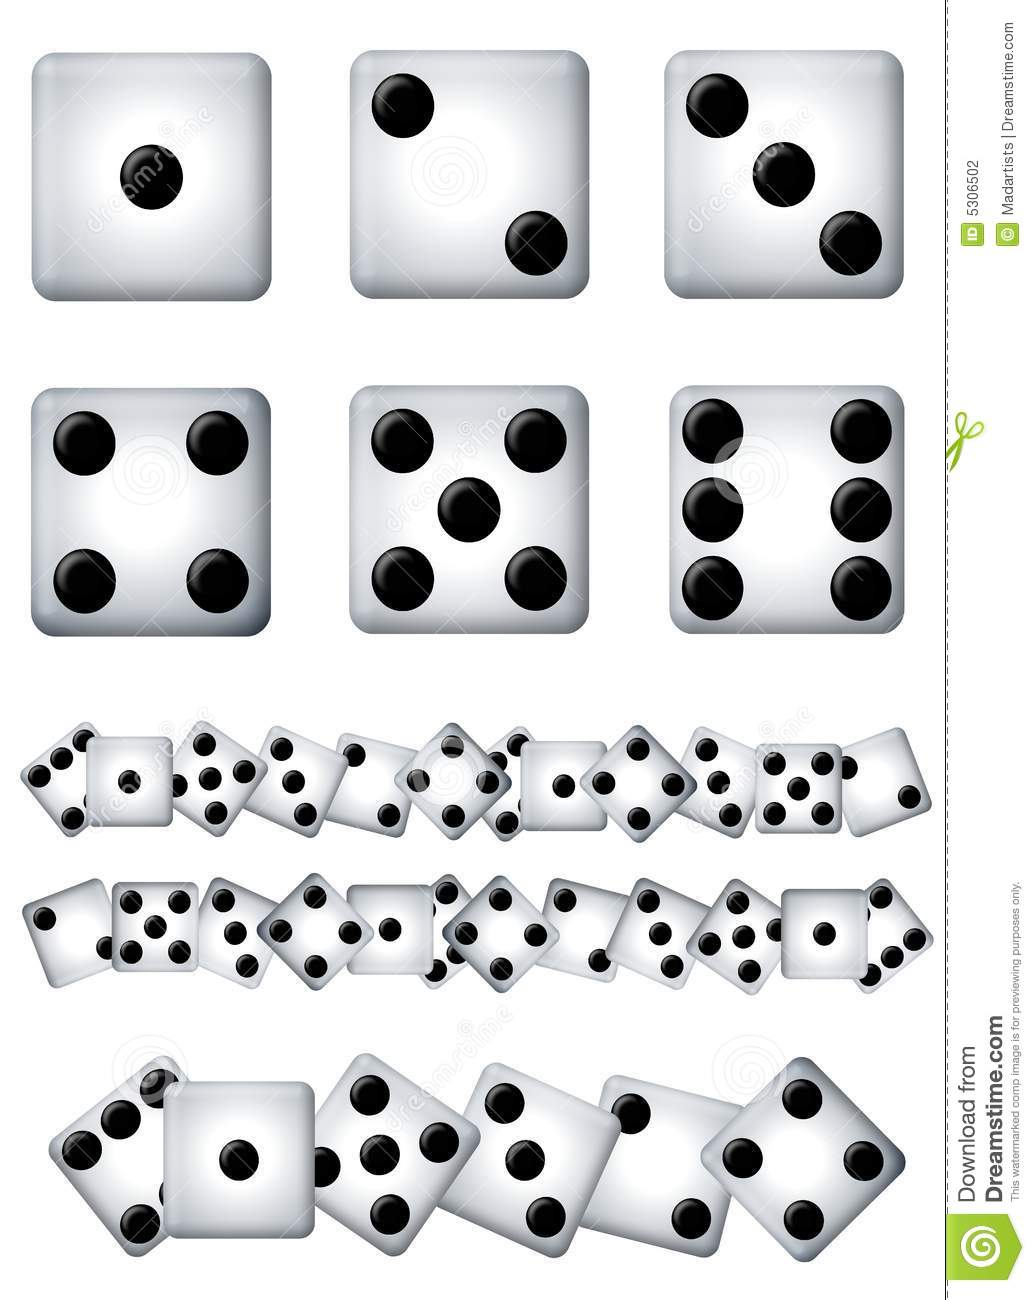 1 dice clipart